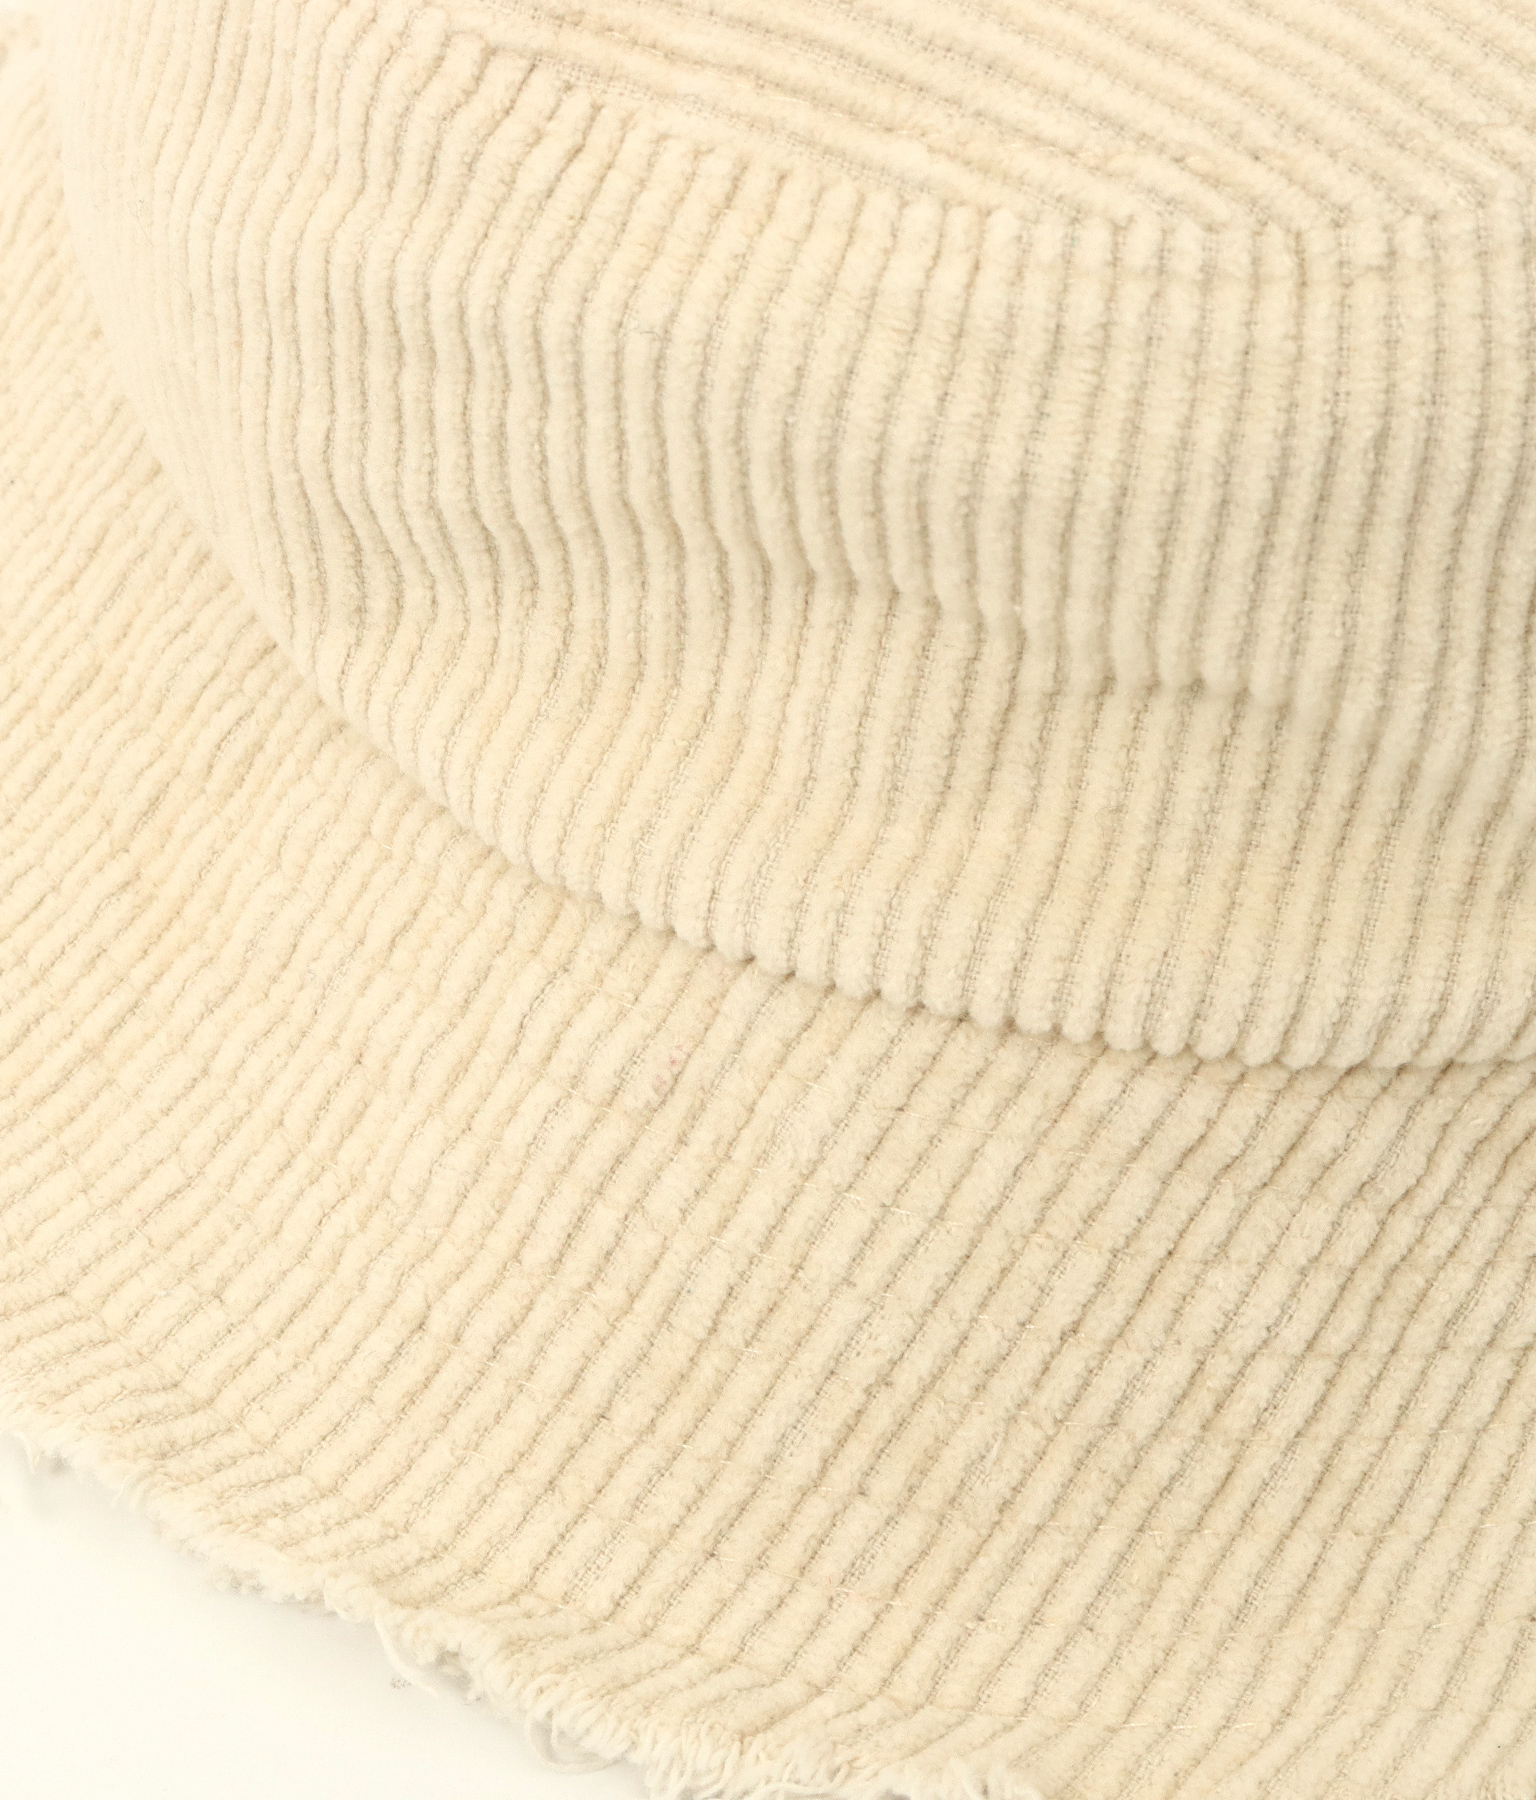 コーデュロイフリンジバケットハット(ファッション雑貨/ハット・キャップ・ニット帽 ・キャスケット・ベレー帽) | anap mimpi